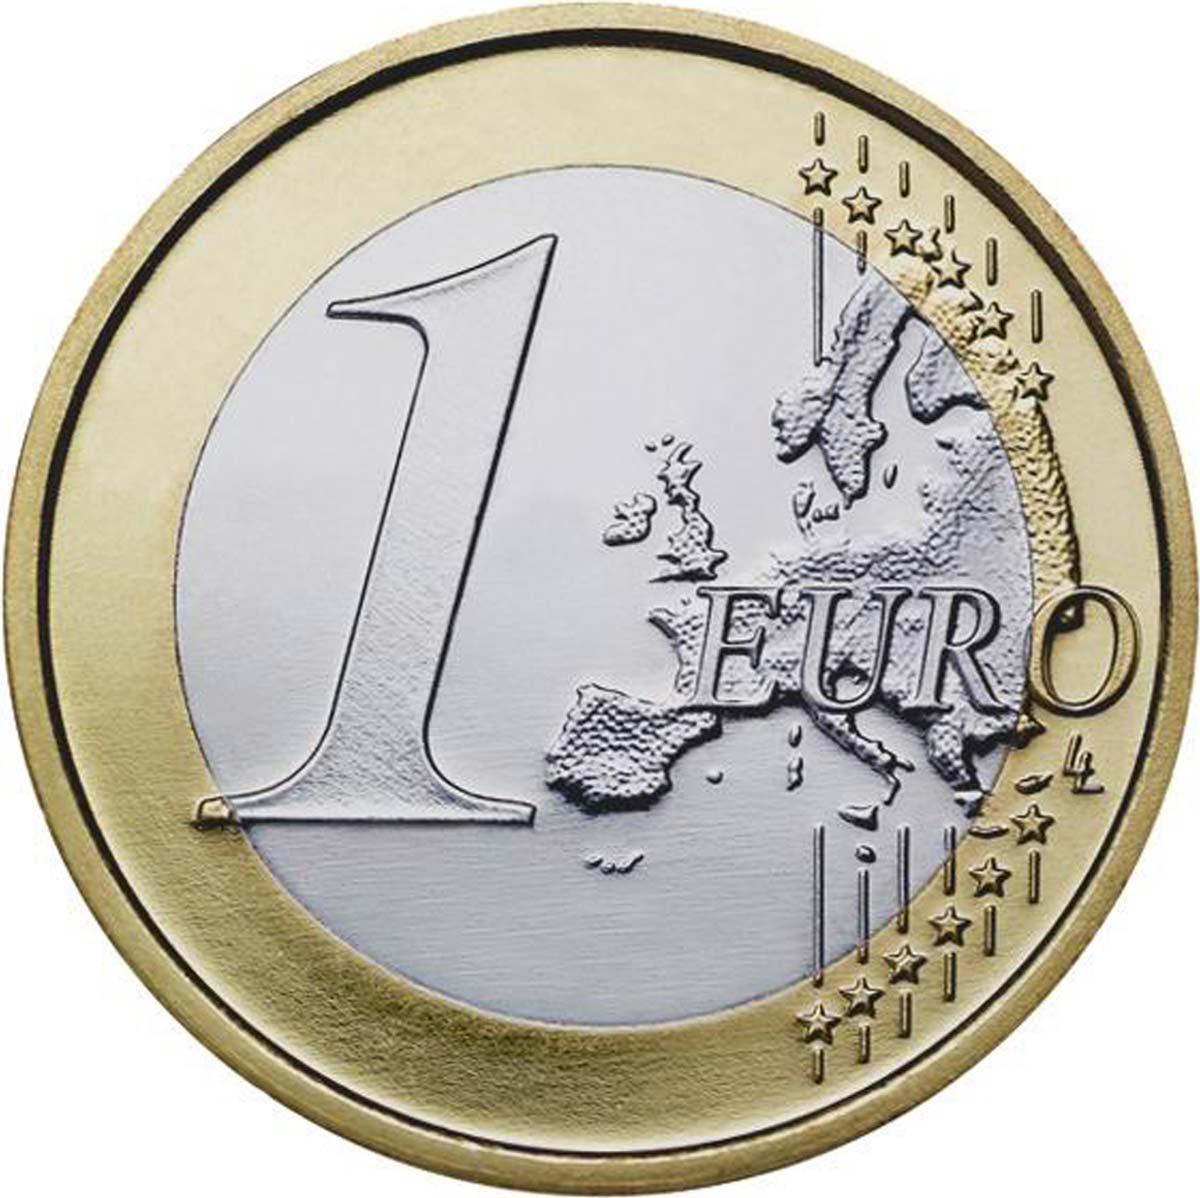 Grecia, il deal sul nuovo piano di aiuti all’esame dell’Eurogruppo